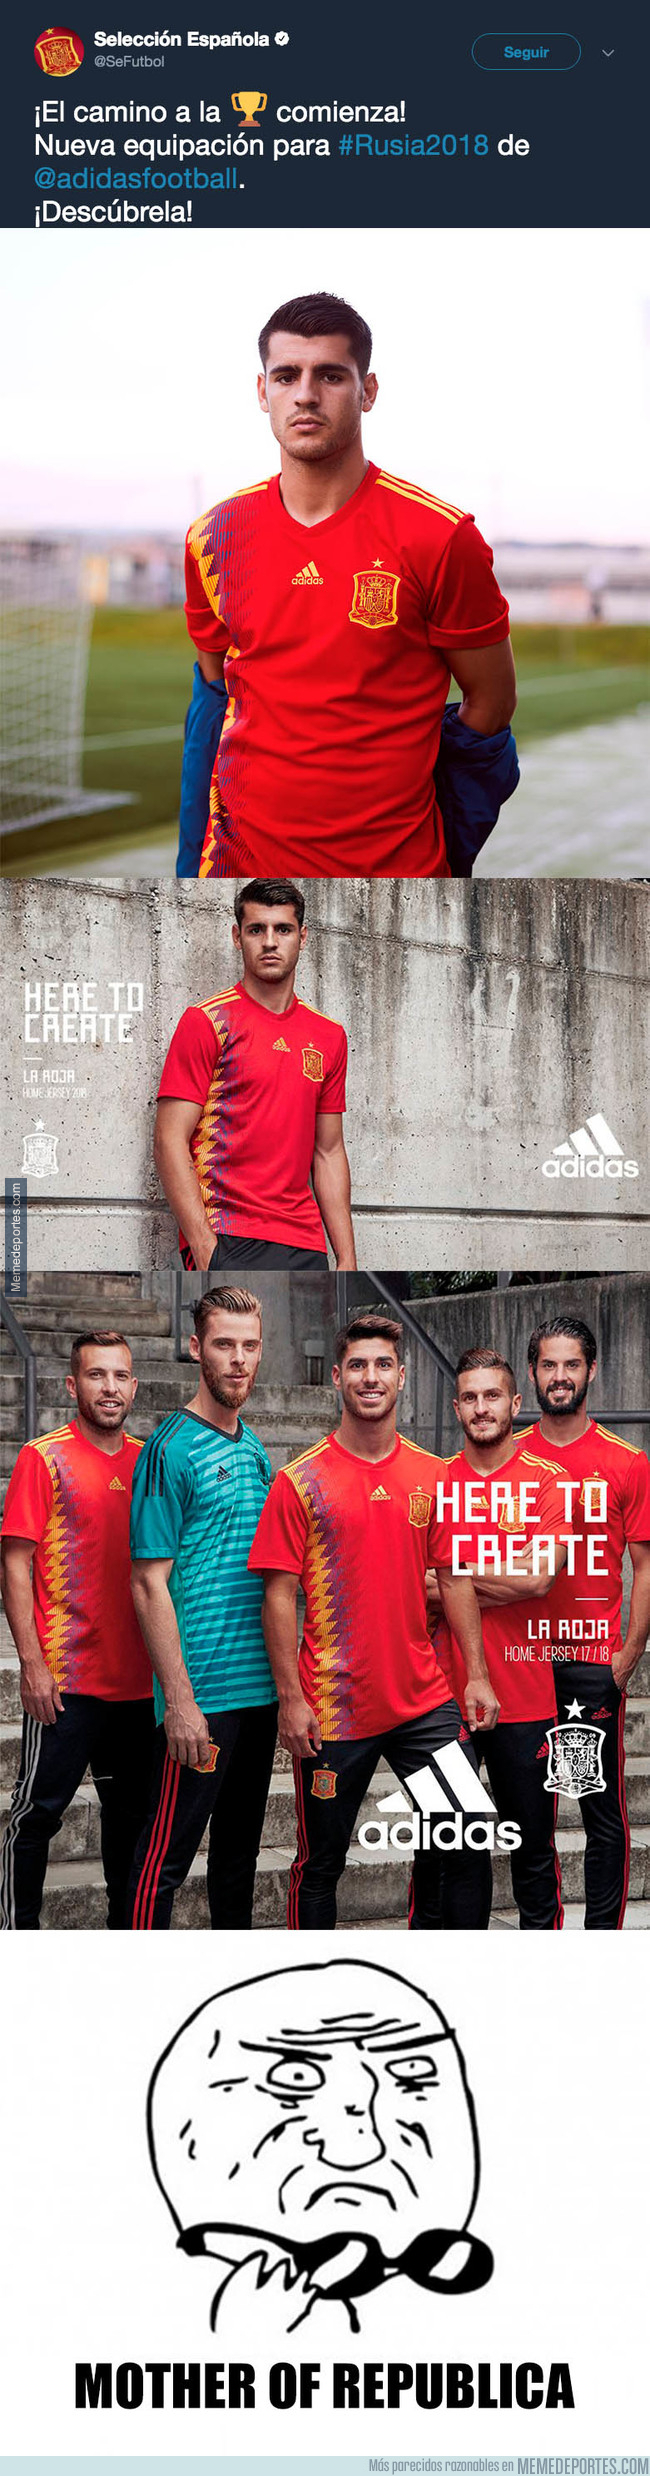 1006872 - Adidas sorprende y presenta la equipación republicana de España para Rusia 2018